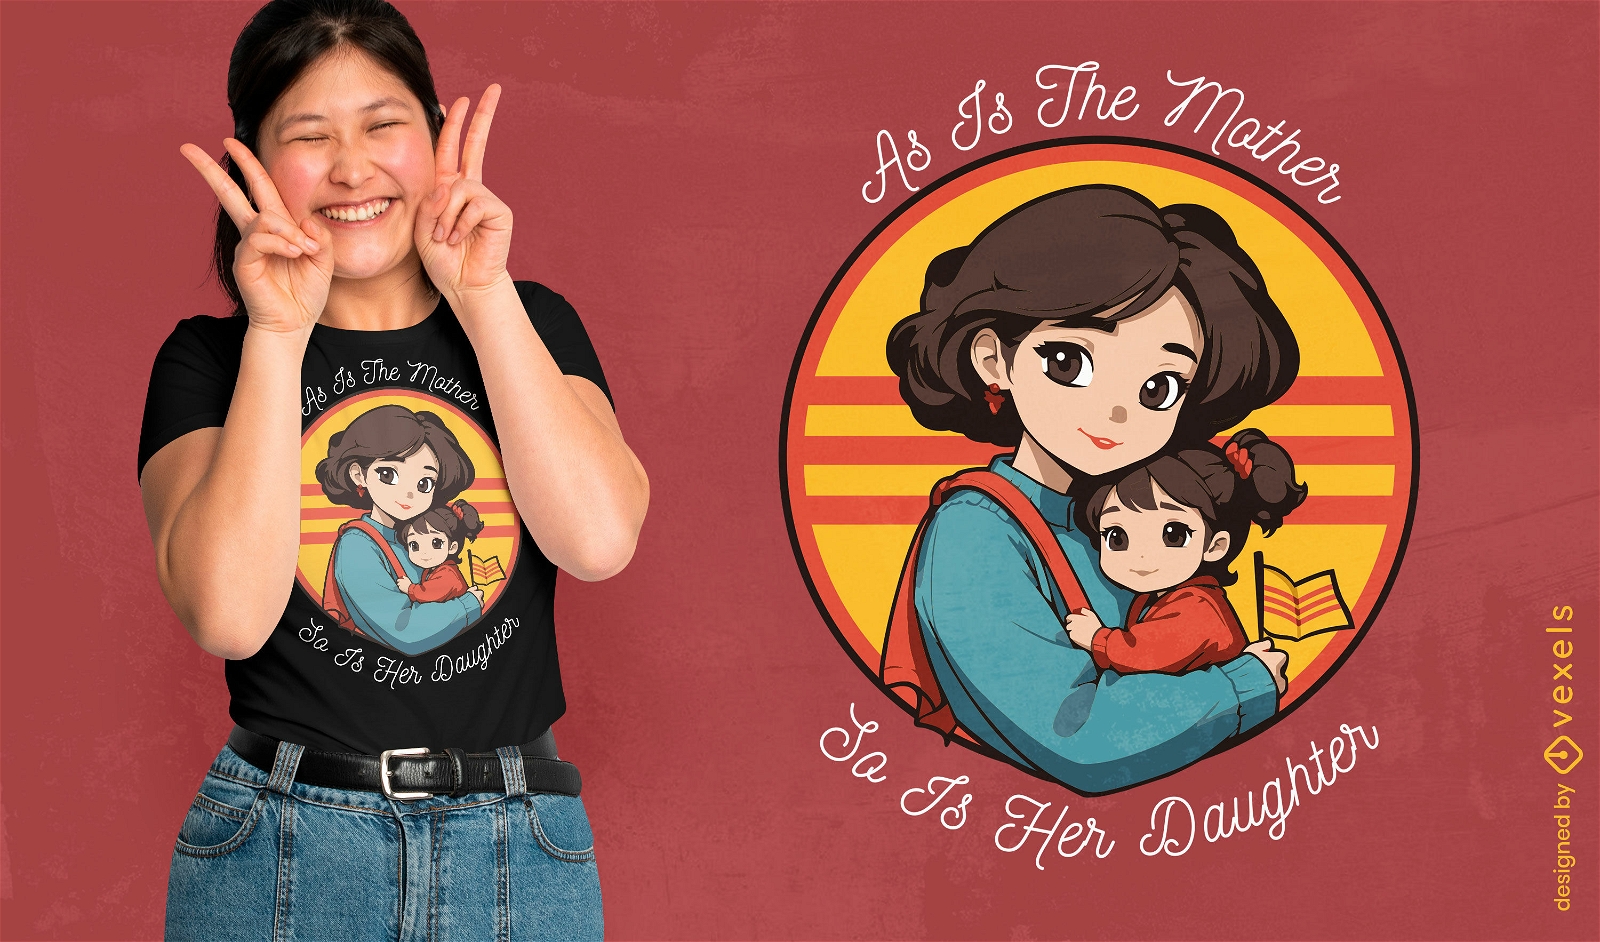 Dise?o de camiseta vietnamita de madre e hija.